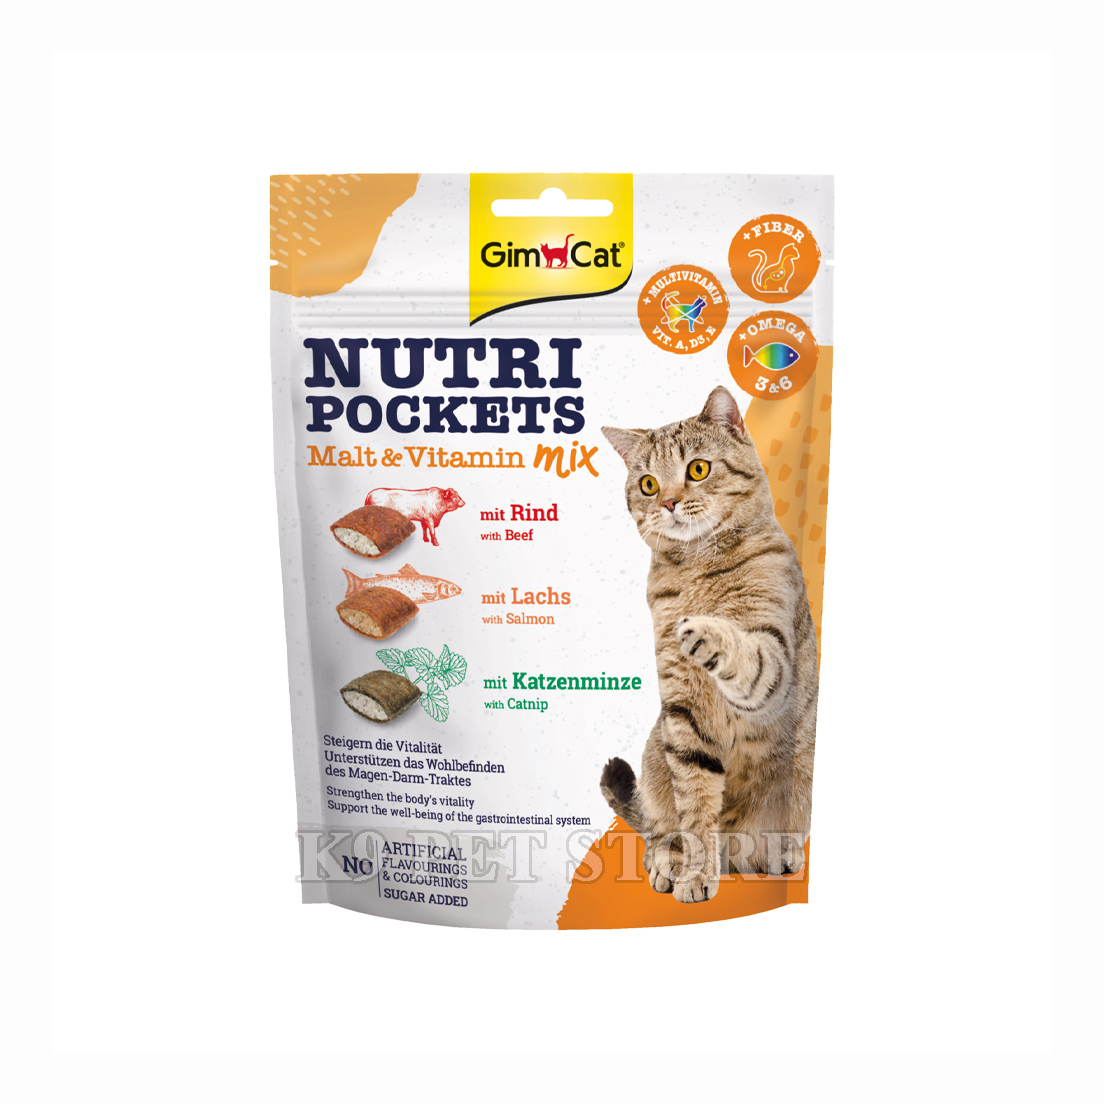 Snack mèo Gimcat Nutri Pockets Malt & Vitamin Mix 150g - vị thịt bò, cá hồi và cỏ mèo